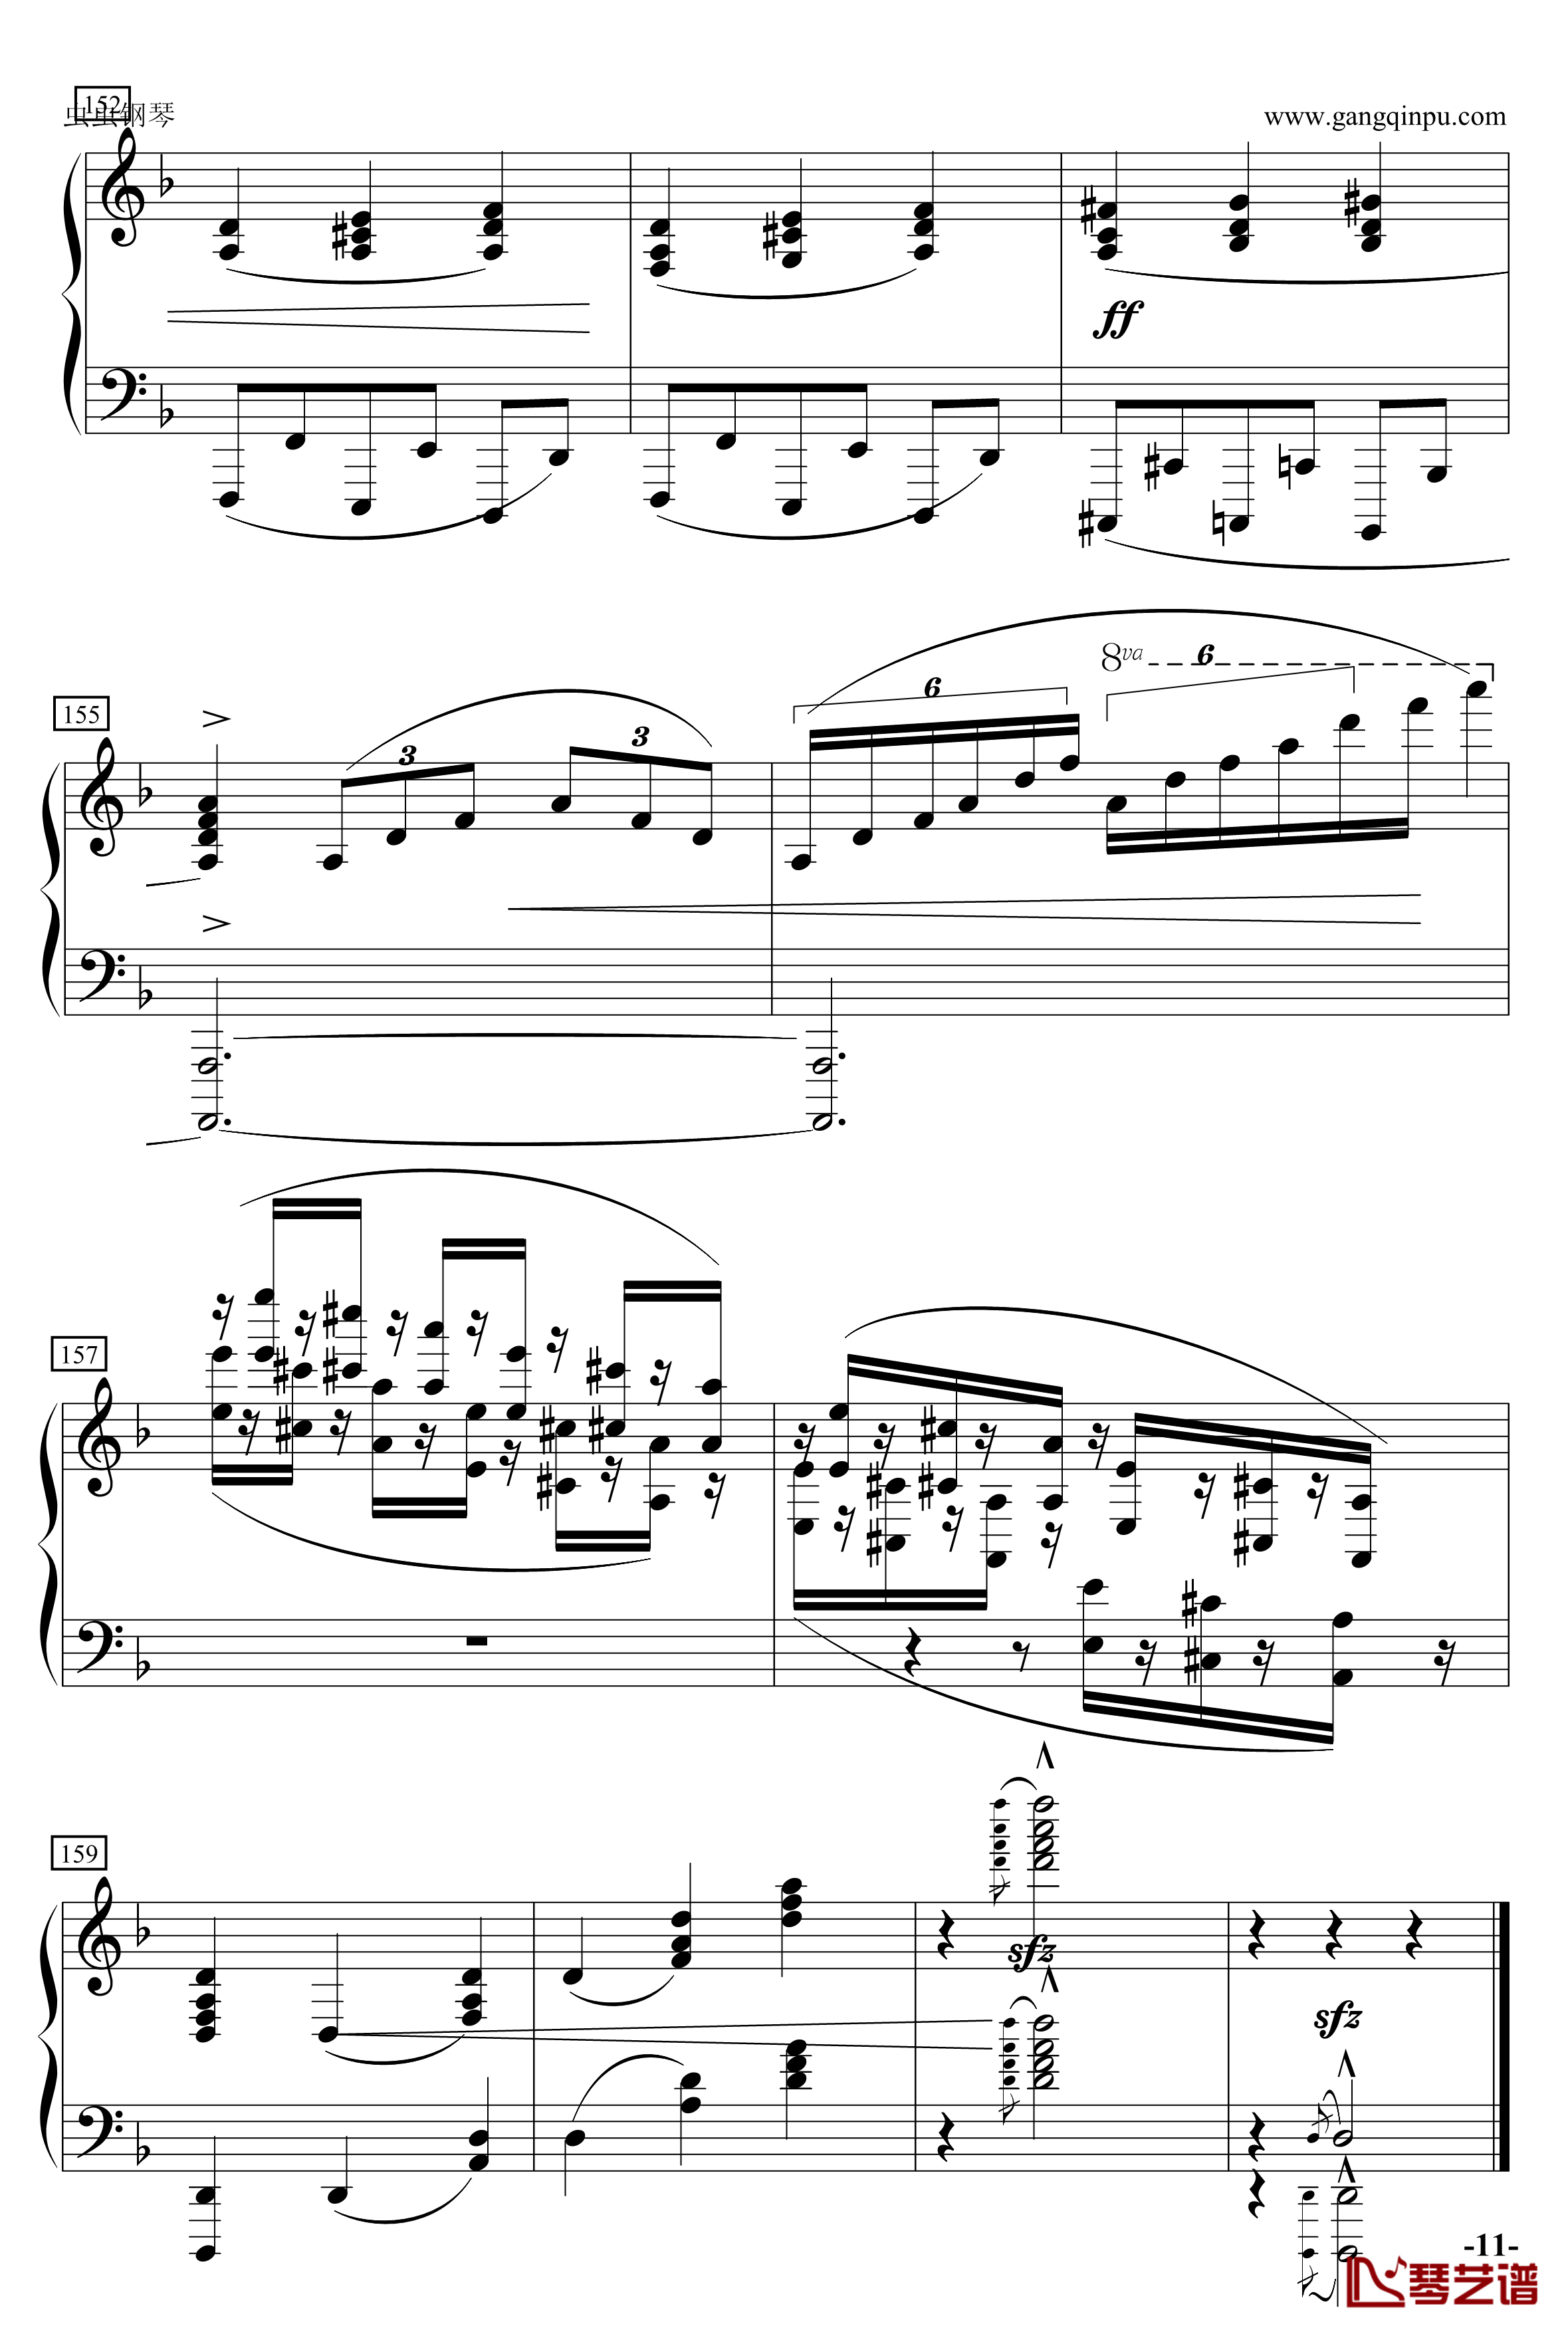 加勒比海盗主题曲钢琴谱-演奏改编版-克劳斯.巴代特11